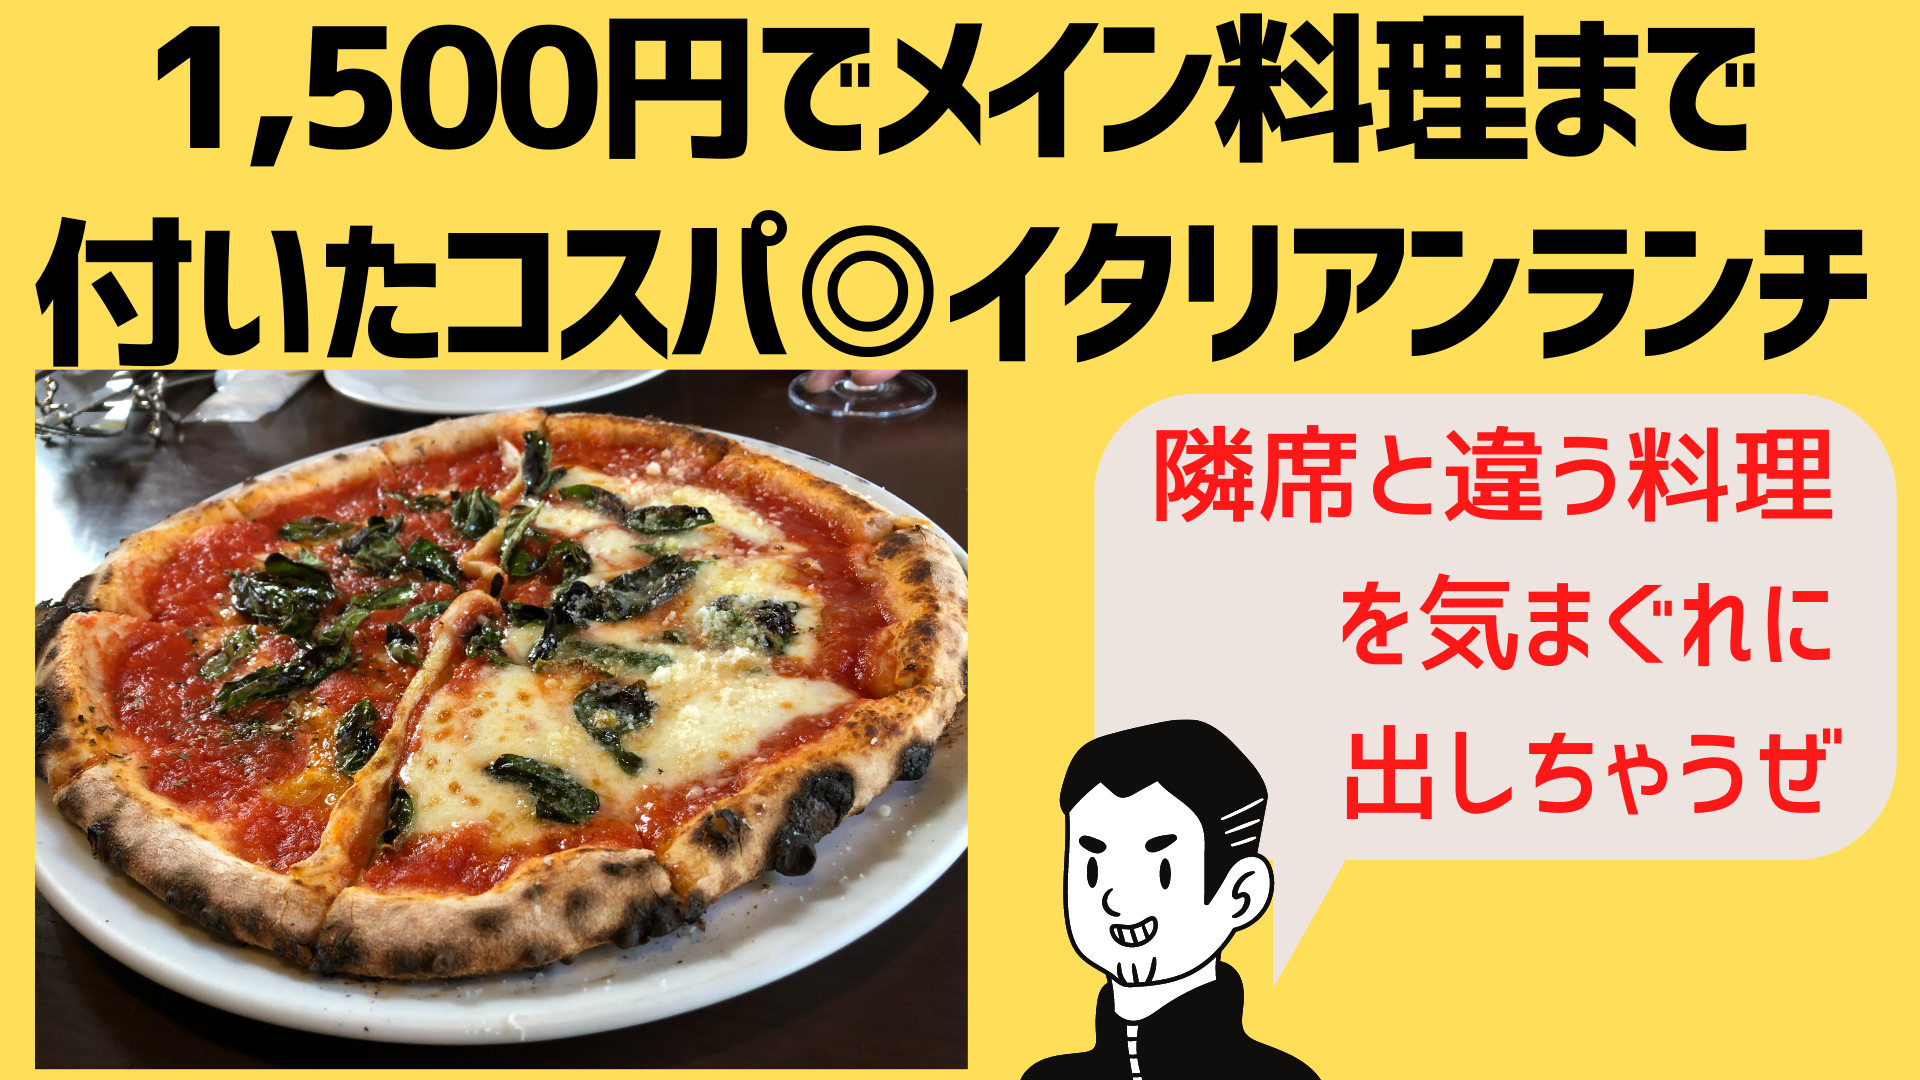 姫路でランチに迷ったら コスパ最高1 500円でイタリアンランチが食べられるイル フォルノ Il Forno 4cファミリー